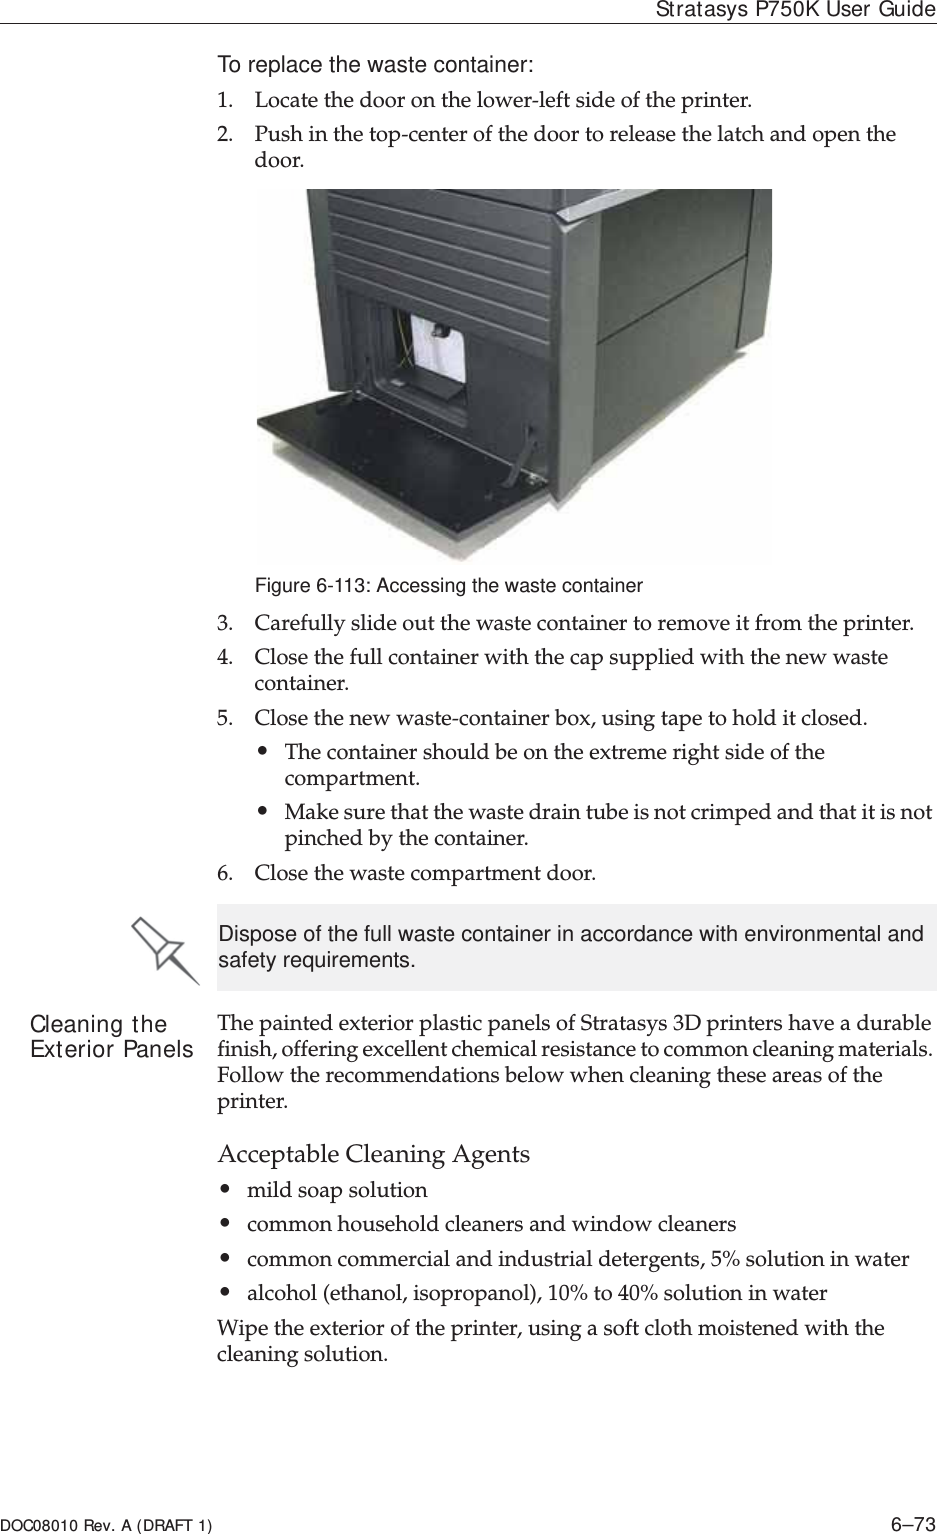 DOC08010 Rev. A (DRAFT 1) 6–73Stratasys P750K User GuideTo replace the waste container:1. LocateȱtheȱdoorȱonȱtheȱlowerȬleftȱsideȱofȱtheȱprinter.2. PushȱinȱtheȱtopȬcenterȱofȱtheȱdoorȱtoȱreleaseȱtheȱlatchȱandȱopenȱtheȱdoor.Figure 6-113: Accessing the waste container3. Carefullyȱslideȱoutȱtheȱwasteȱcontainerȱtoȱremoveȱitȱfromȱtheȱprinter.4. Closeȱtheȱfullȱcontainerȱwithȱtheȱcapȱsuppliedȱwithȱtheȱnewȱwasteȱcontainer.5. CloseȱtheȱnewȱwasteȬcontainerȱbox,ȱusingȱtapeȱtoȱholdȱitȱclosed.ȱ•Theȱcontainerȱshouldȱbeȱonȱtheȱextremeȱrightȱsideȱofȱtheȱcompartment.ȱ•Makeȱsureȱthatȱtheȱwasteȱdrainȱtubeȱisȱnotȱcrimpedȱandȱthatȱitȱisȱnotȱpinchedȱbyȱtheȱcontainer.6. Closeȱtheȱwasteȱcompartmentȱdoor.Cleaning the Exterior Panels TheȱpaintedȱexteriorȱplasticȱpanelsȱofȱStratasysȱ3Dȱprintersȱhaveȱaȱdurableȱfinish,ȱofferingȱexcellentȱchemicalȱresistanceȱtoȱcommonȱcleaningȱmaterials.ȱFollowȱtheȱrecommendationsȱbelowȱwhenȱcleaningȱtheseȱareasȱofȱtheȱprinter.AcceptableȱCleaningȱAgents•mildȱsoapȱsolutionȱ•commonȱhouseholdȱcleanersȱandȱwindowȱcleaners•commonȱcommercialȱandȱindustrialȱdetergents,ȱ5%ȱsolutionȱinȱwaterȱ•alcoholȱ(ethanol,ȱisopropanol),ȱ10%ȱtoȱ40%ȱsolutionȱinȱwaterWipeȱtheȱexteriorȱofȱtheȱprinter,ȱusingȱaȱsoftȱclothȱmoistenedȱwithȱtheȱcleaningȱsolution.Dispose of the full waste container in accordance with environmental and safety requirements.